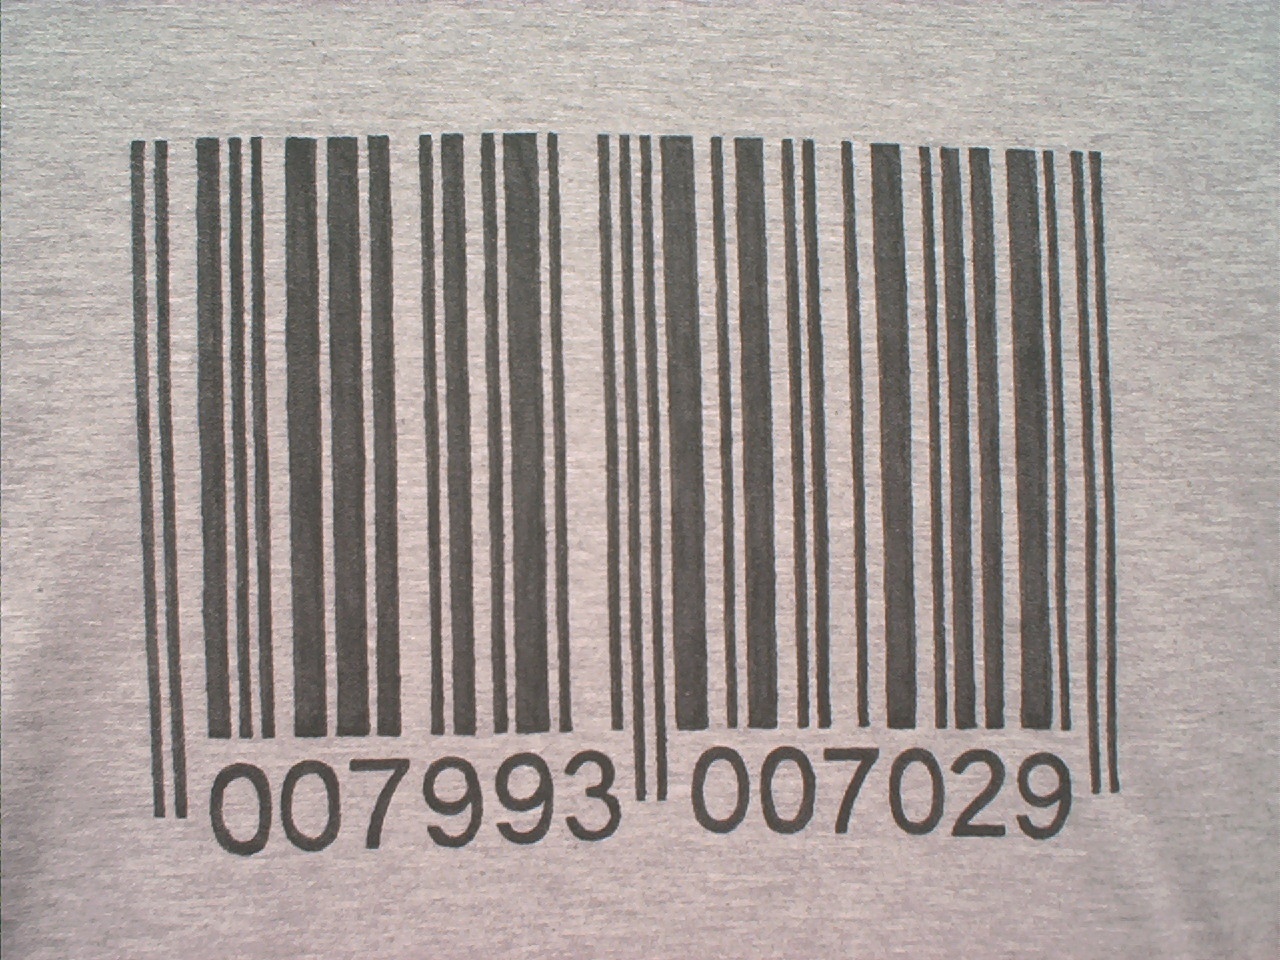 Barcode closeup